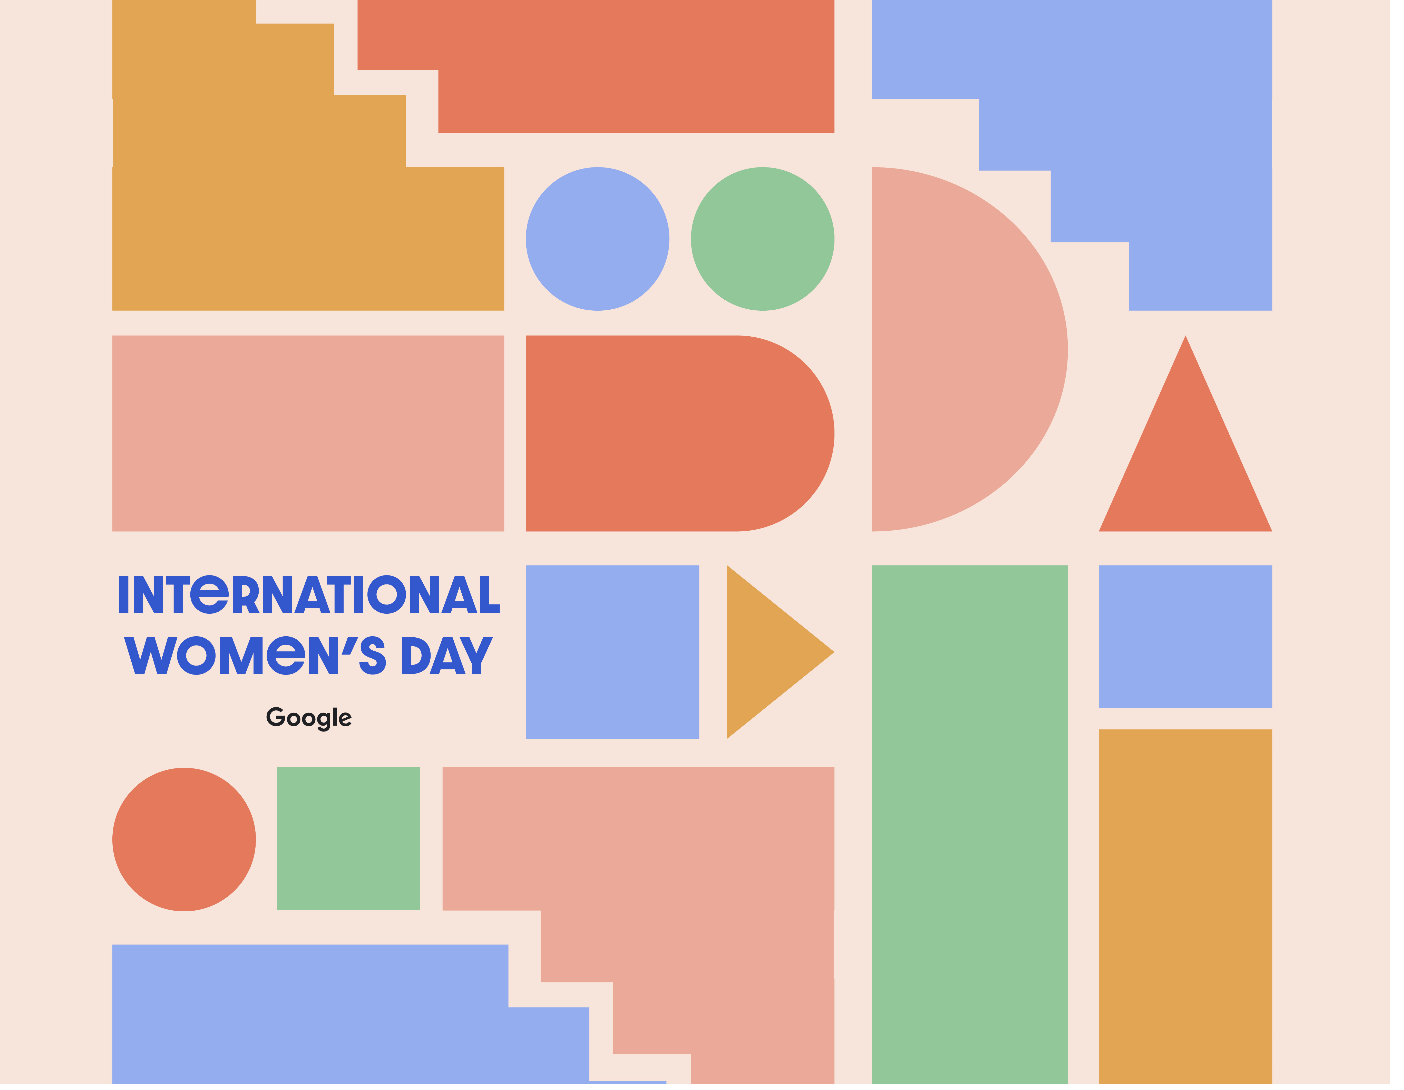 Яркий баннер Международного женского дня пестрит цветами, окруженный игривыми геометрическими фигурами, прославляя разнообразие и инклюзивность.